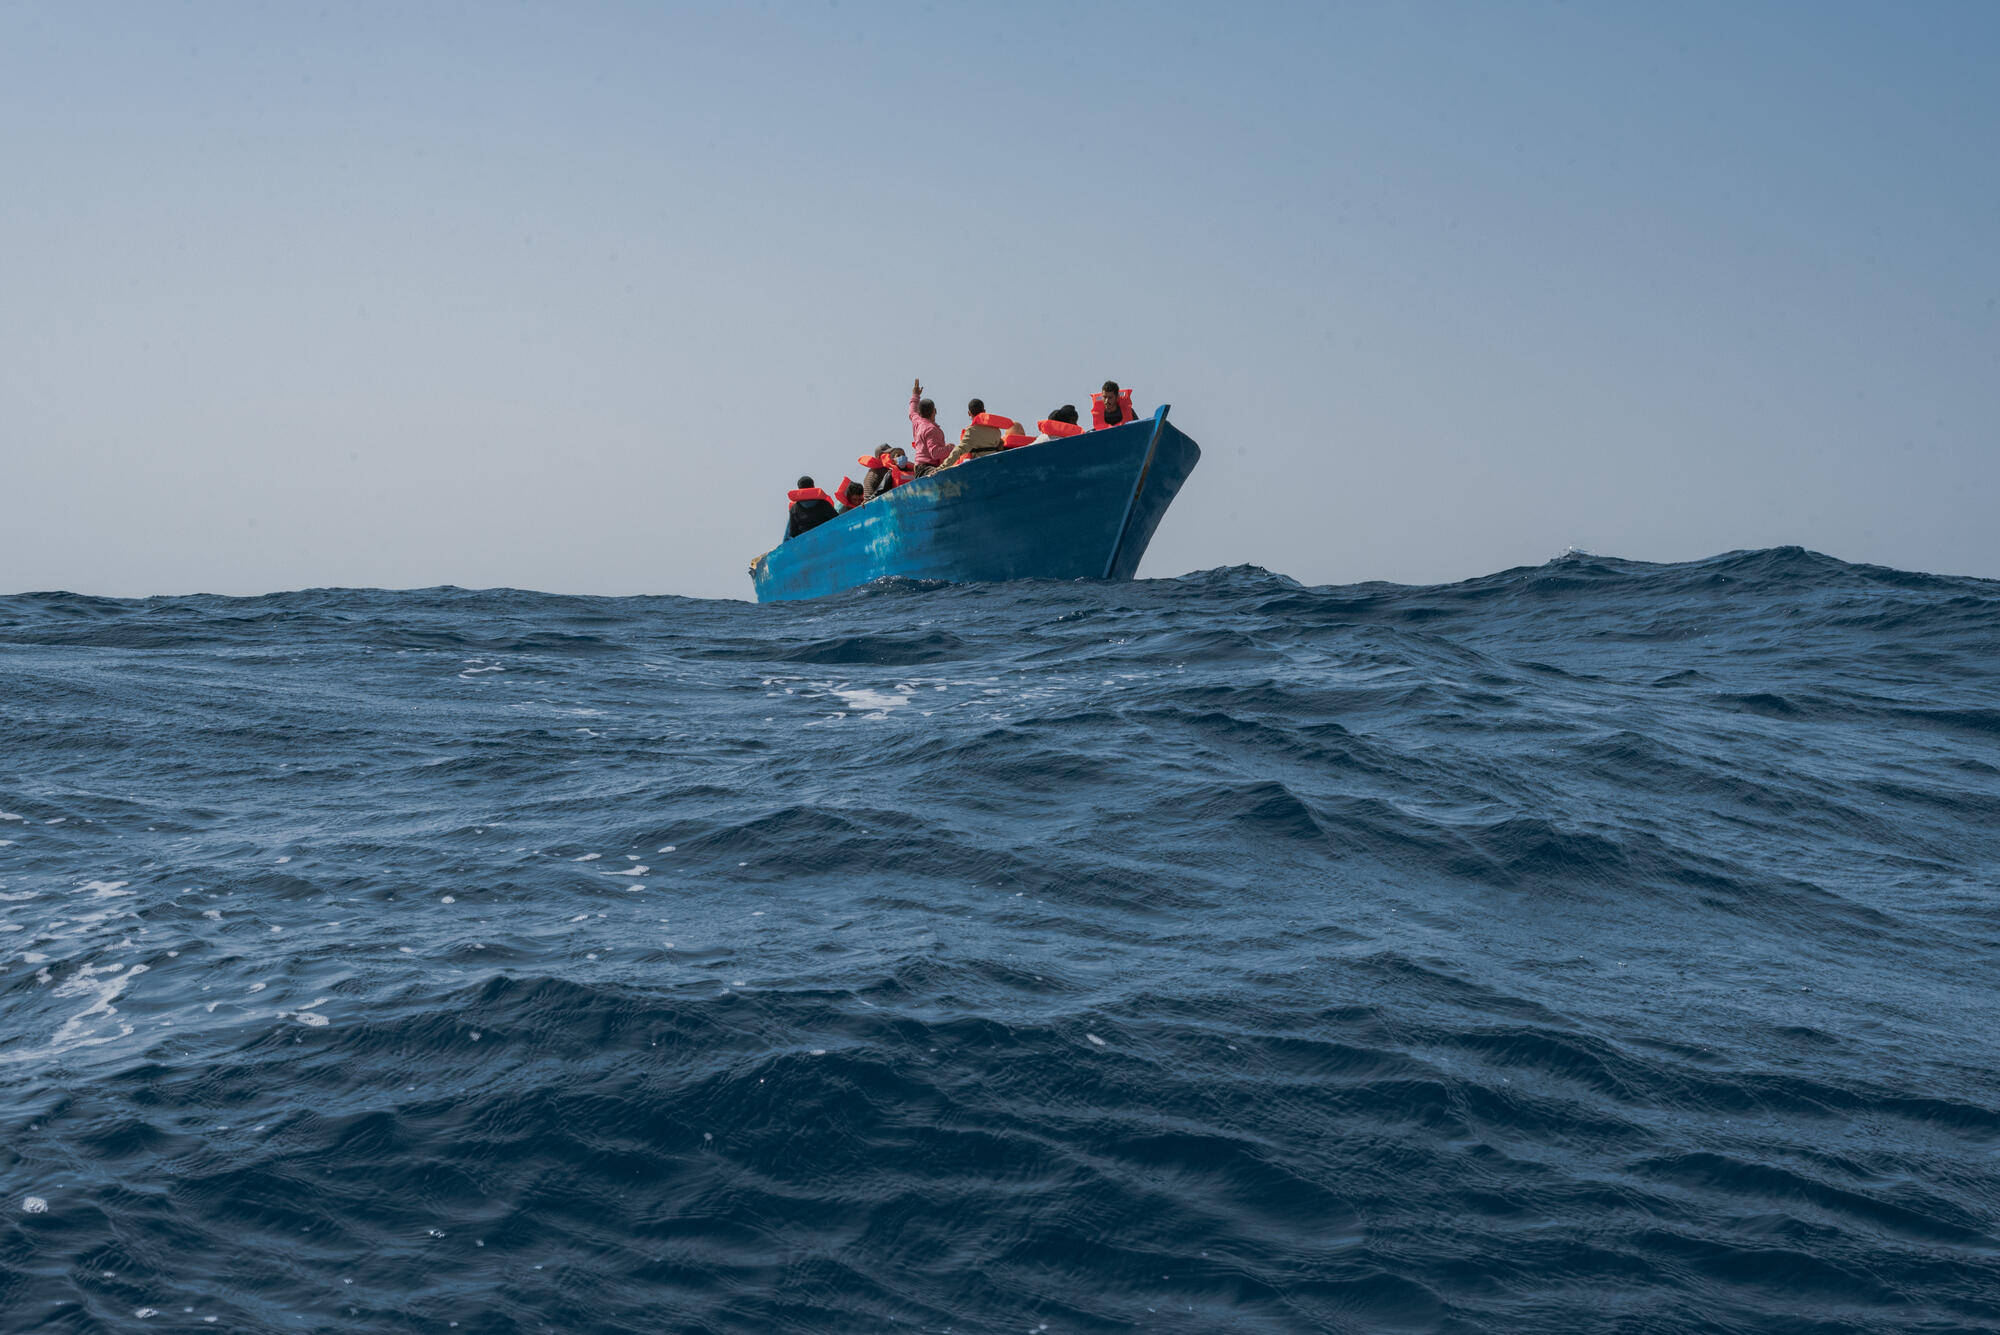 من سواحل ليبيا إلى كريت اليونانية.. مسارات الهجرة تأخذ طريقا جديدا في المتوسط